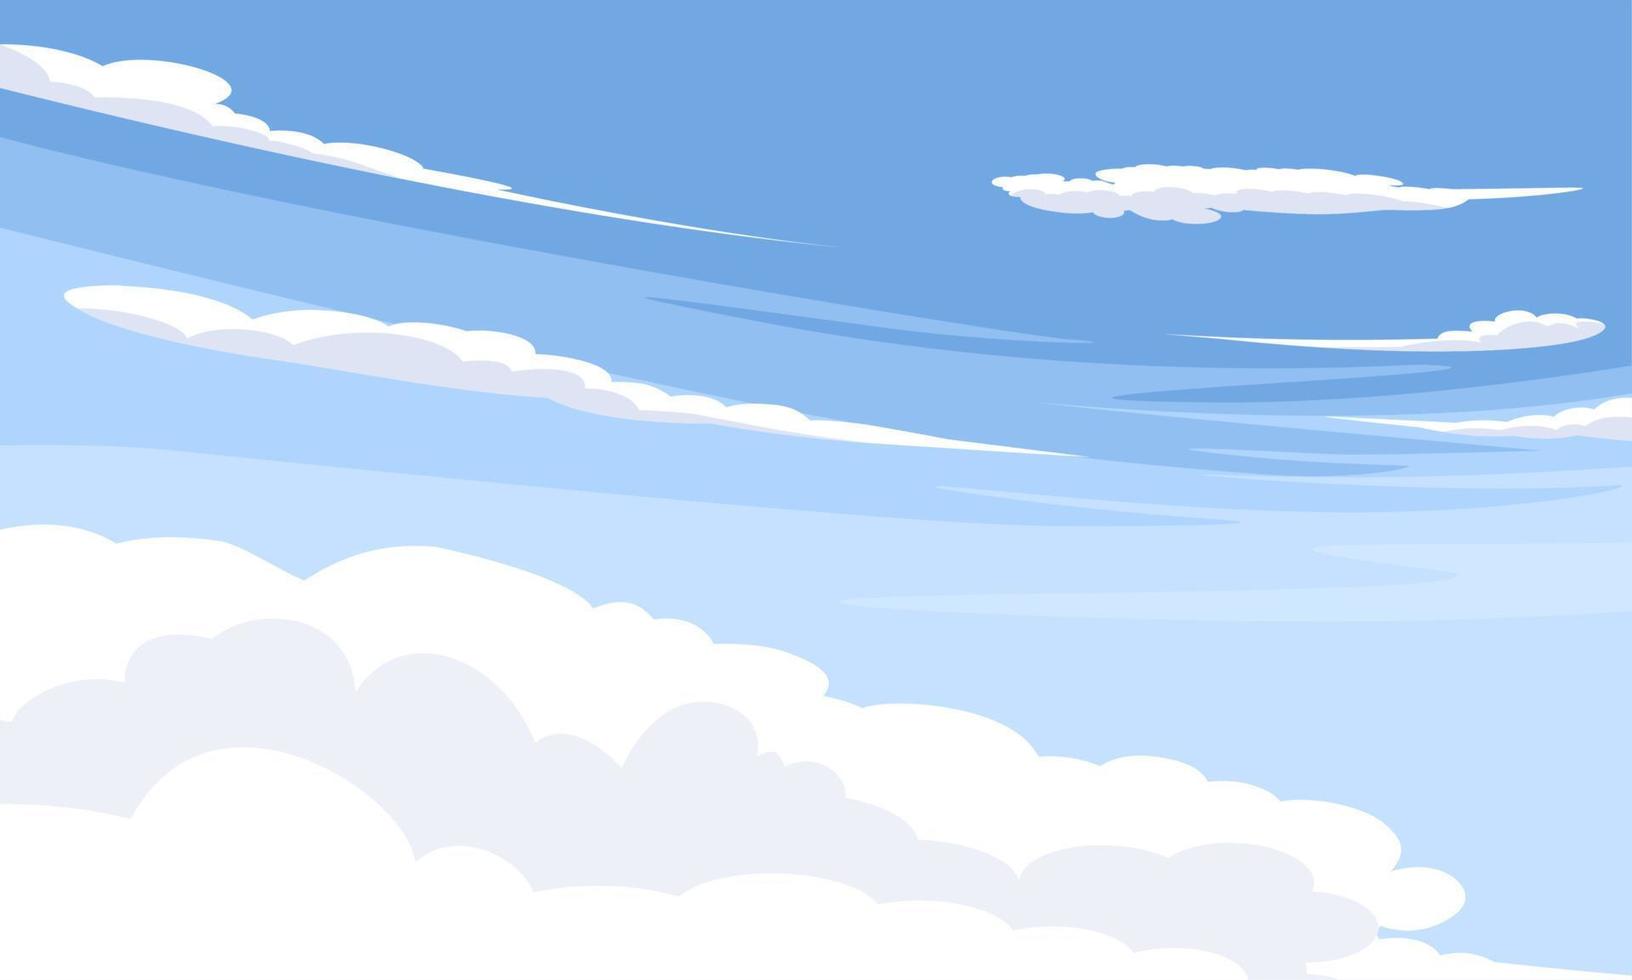 illustration vectorielle, ciel bleu avec des nuages blancs, comme image de fond ou de bannière, journée internationale de l'air pur pour le ciel bleu. vecteur